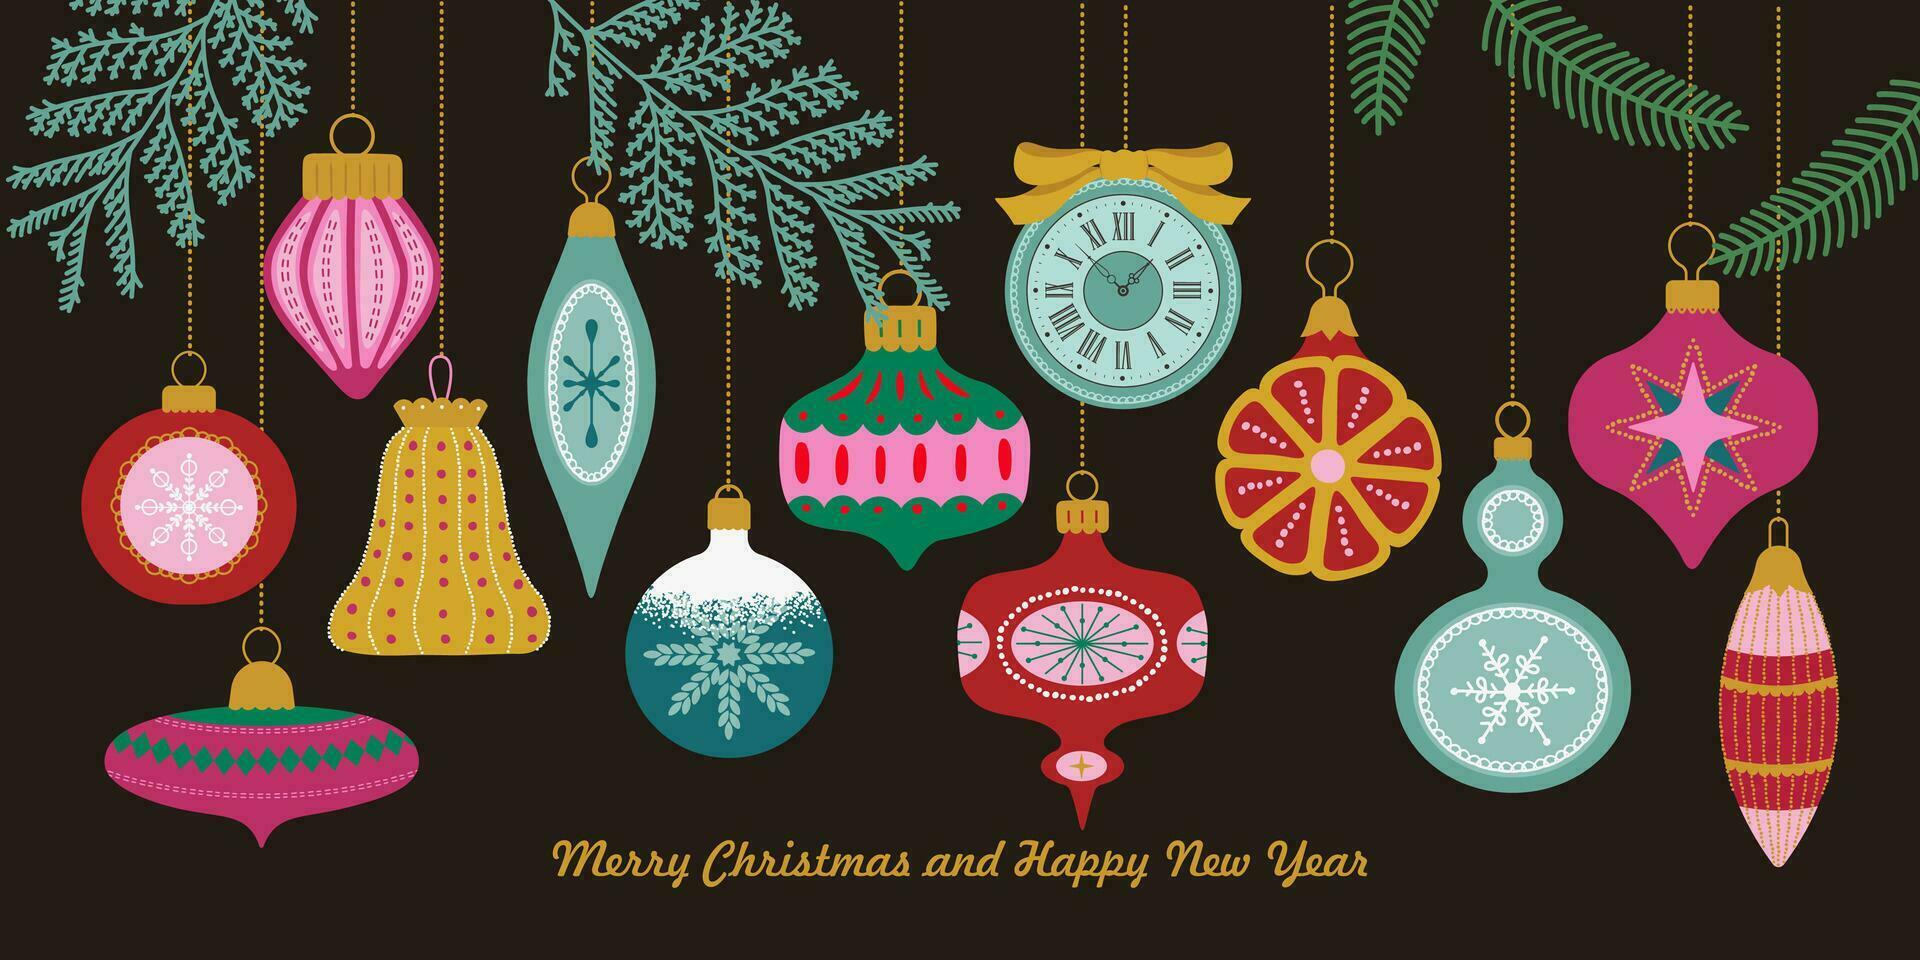 jul sammansättning med vintergröna kvistar, och årgång jul glas bollar. vektor illustration i retro platt stil